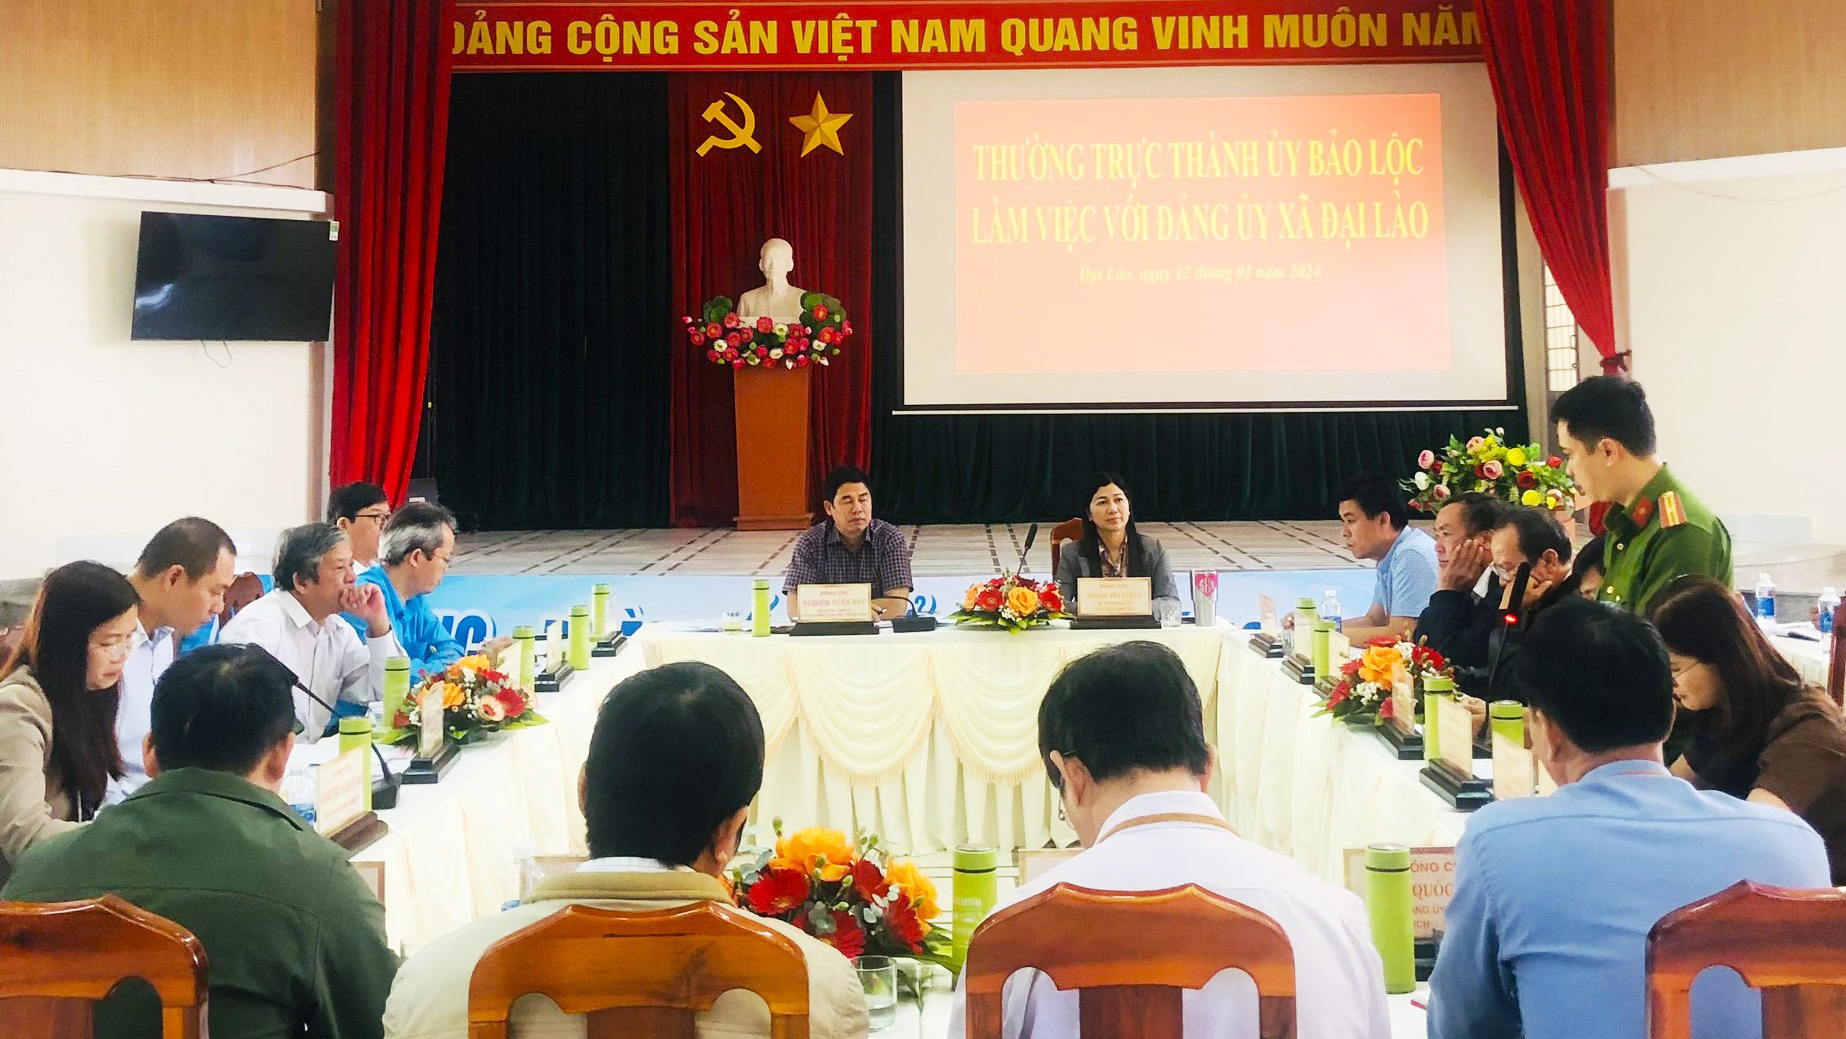 Đồng chí Nghiêm Xuân Đức - Phó Bí thư Thường trực Thành ủy, Chủ tịch HĐND TP Bảo Lộc làm việc với xã Đại Lào